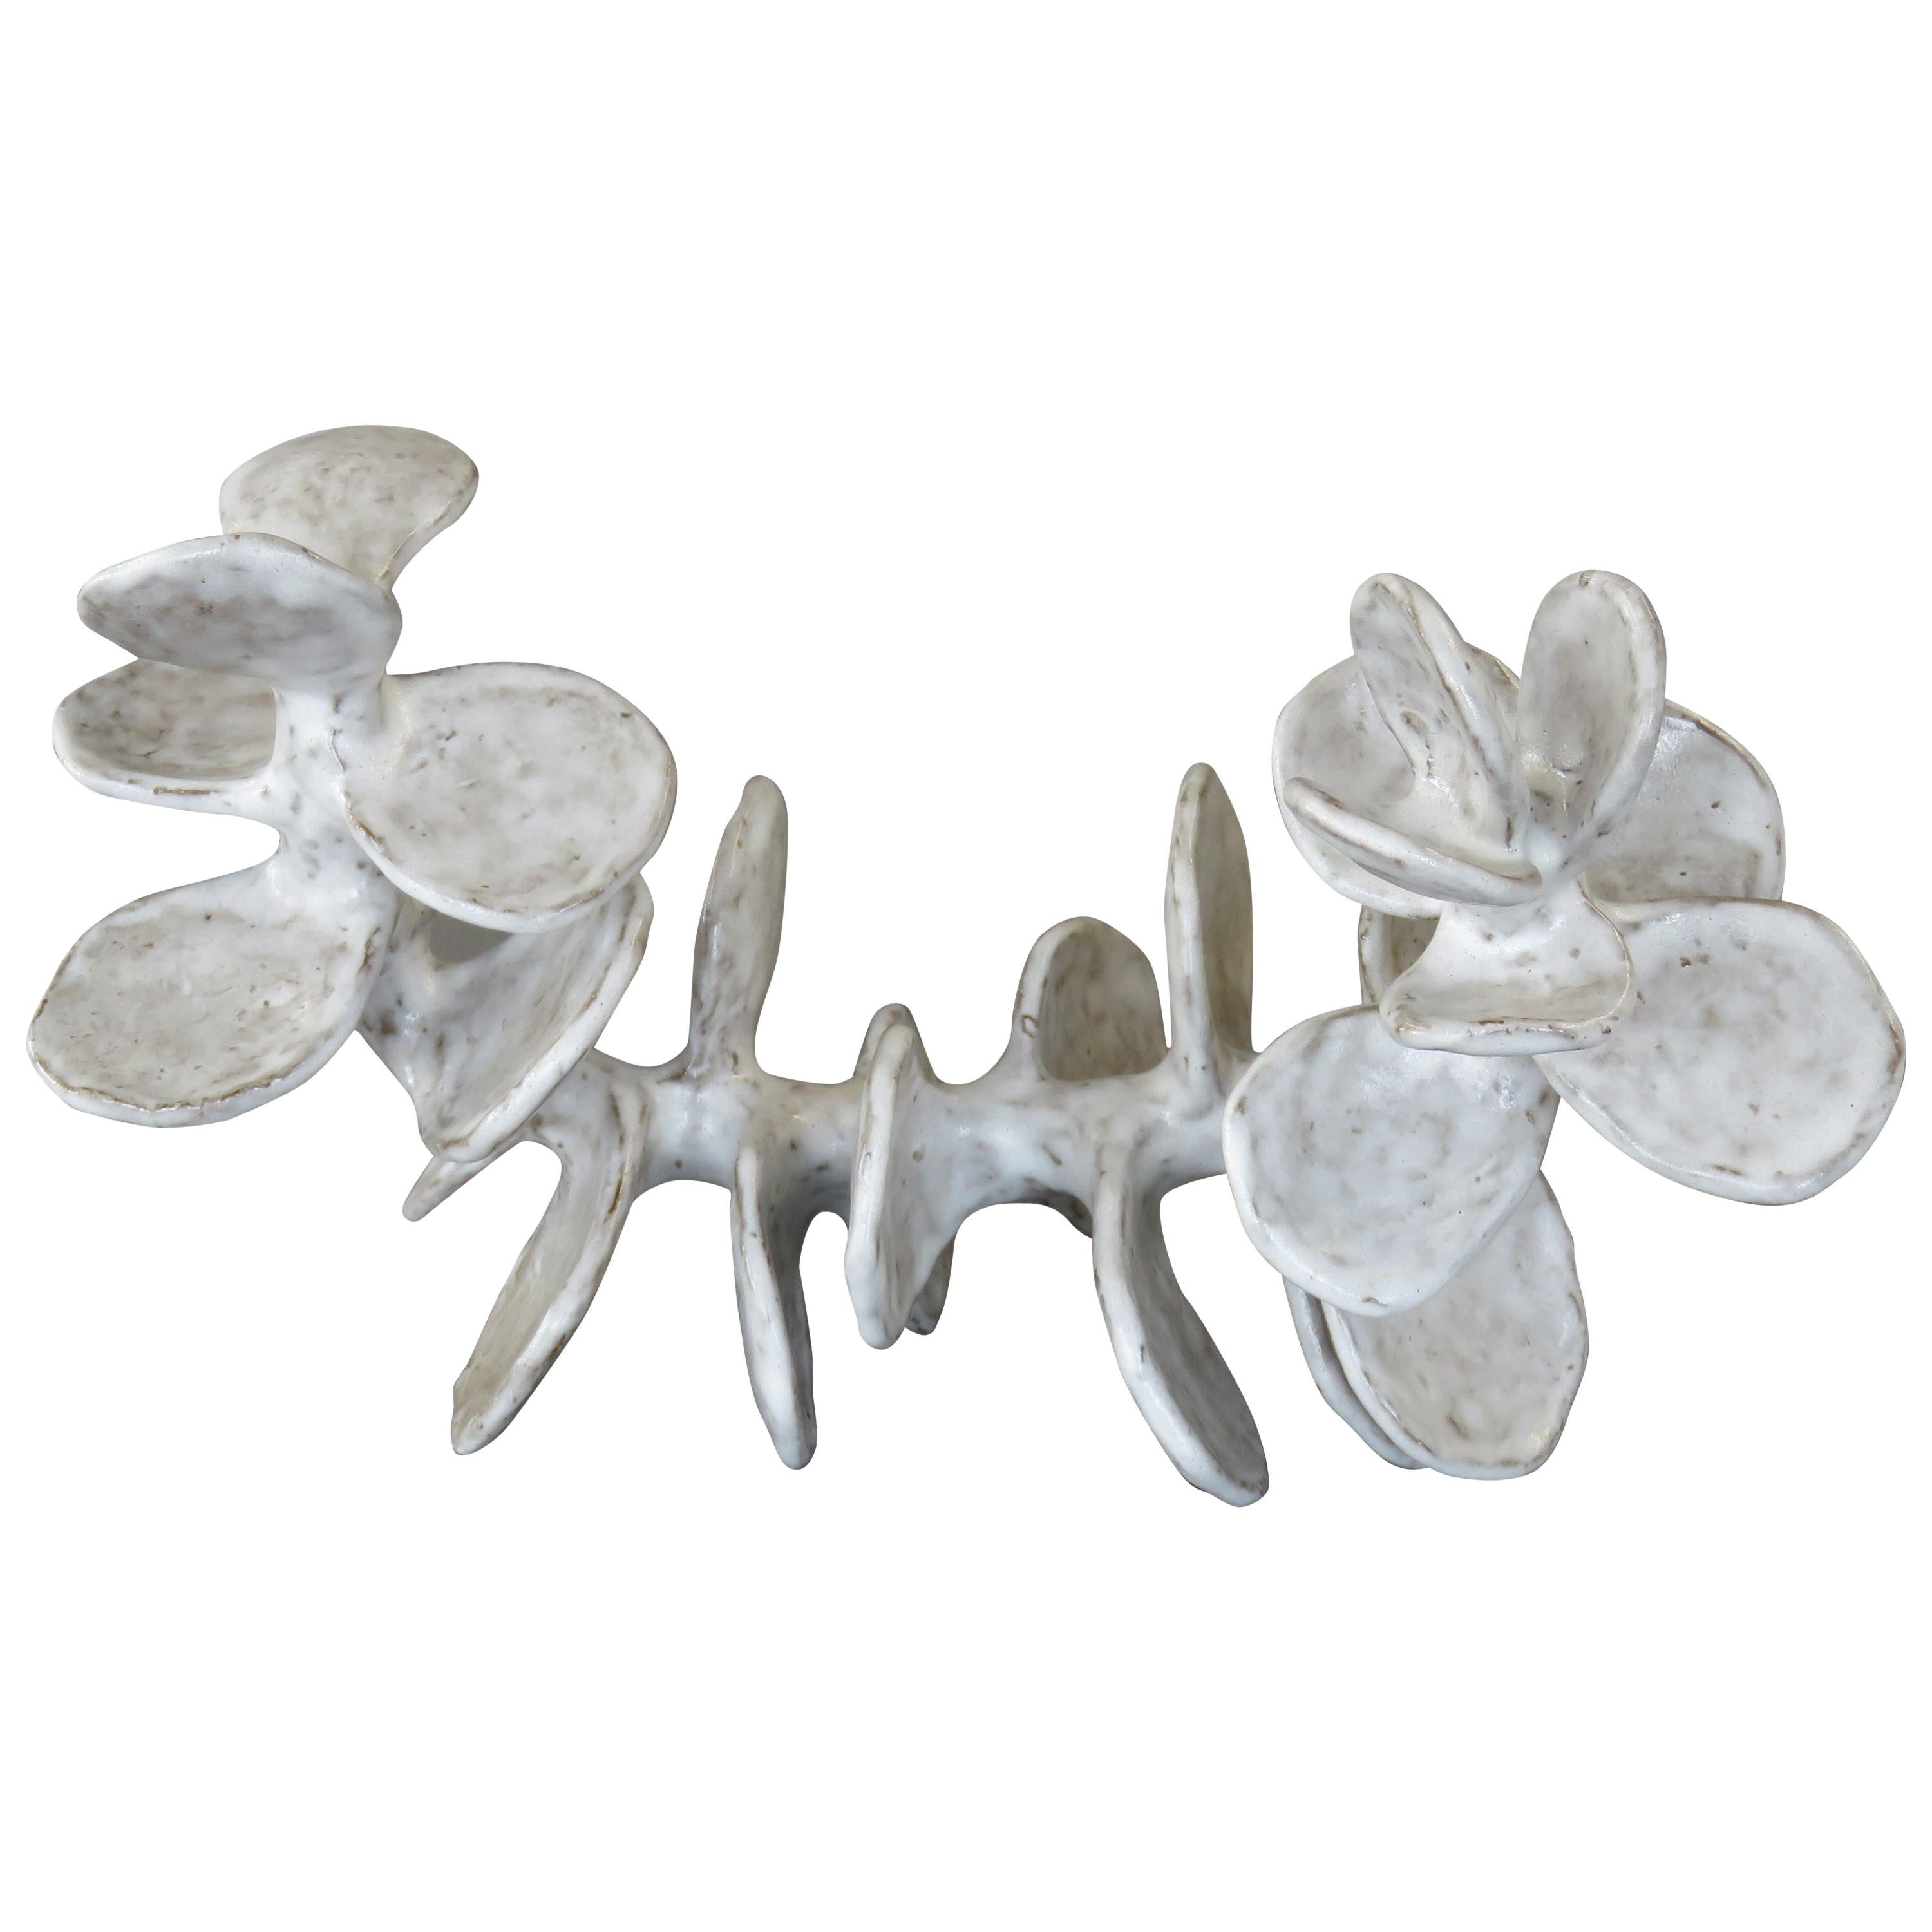 Handbuilt Ceramic Sculpture, Reclining Skeletal Spine in Mottled White